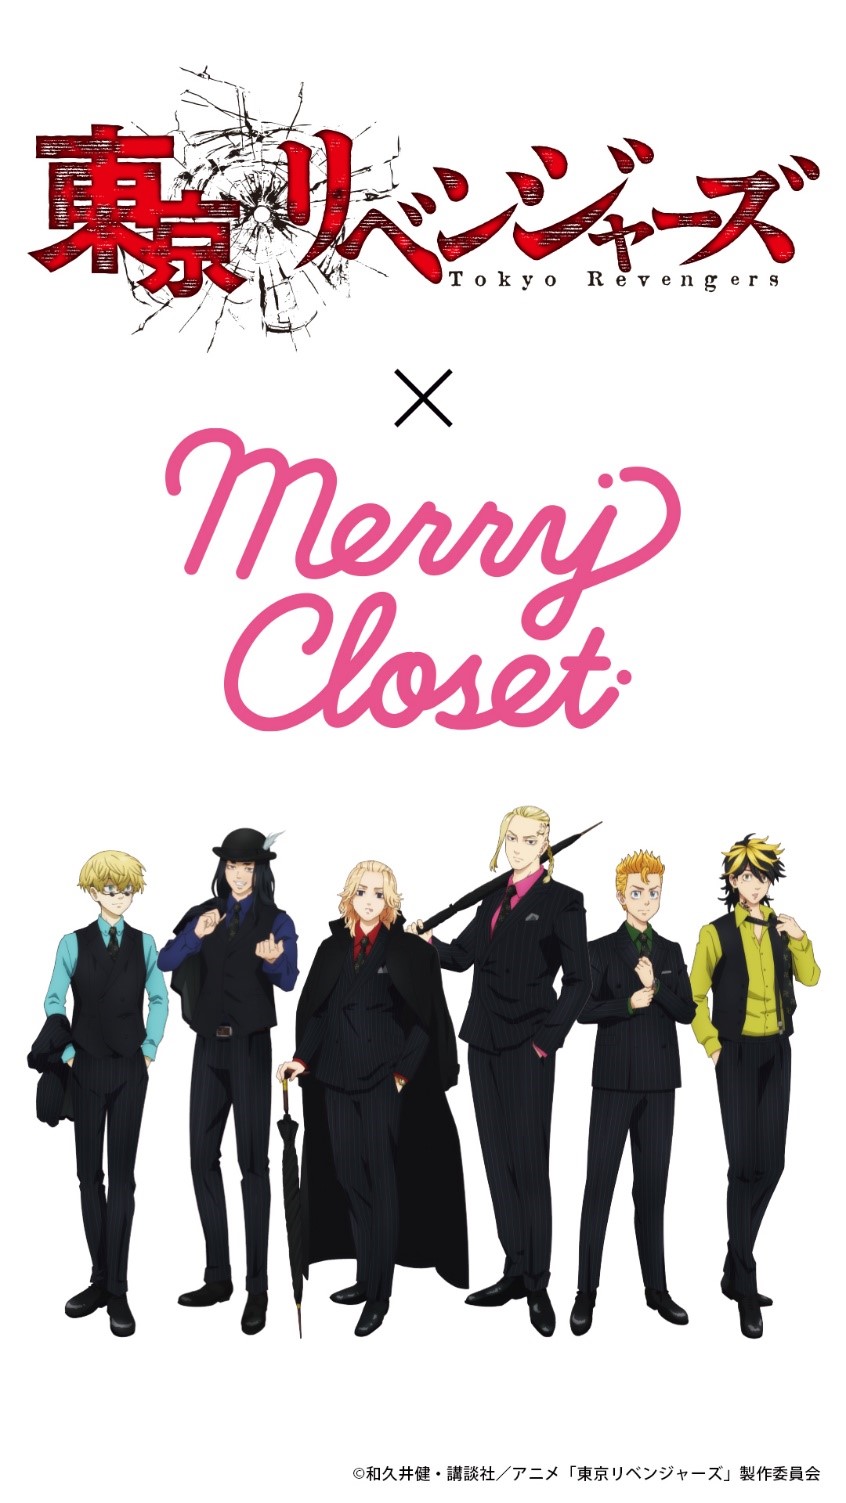 TVアニメ「東京リベンジャーズ」×「Merry Closet」